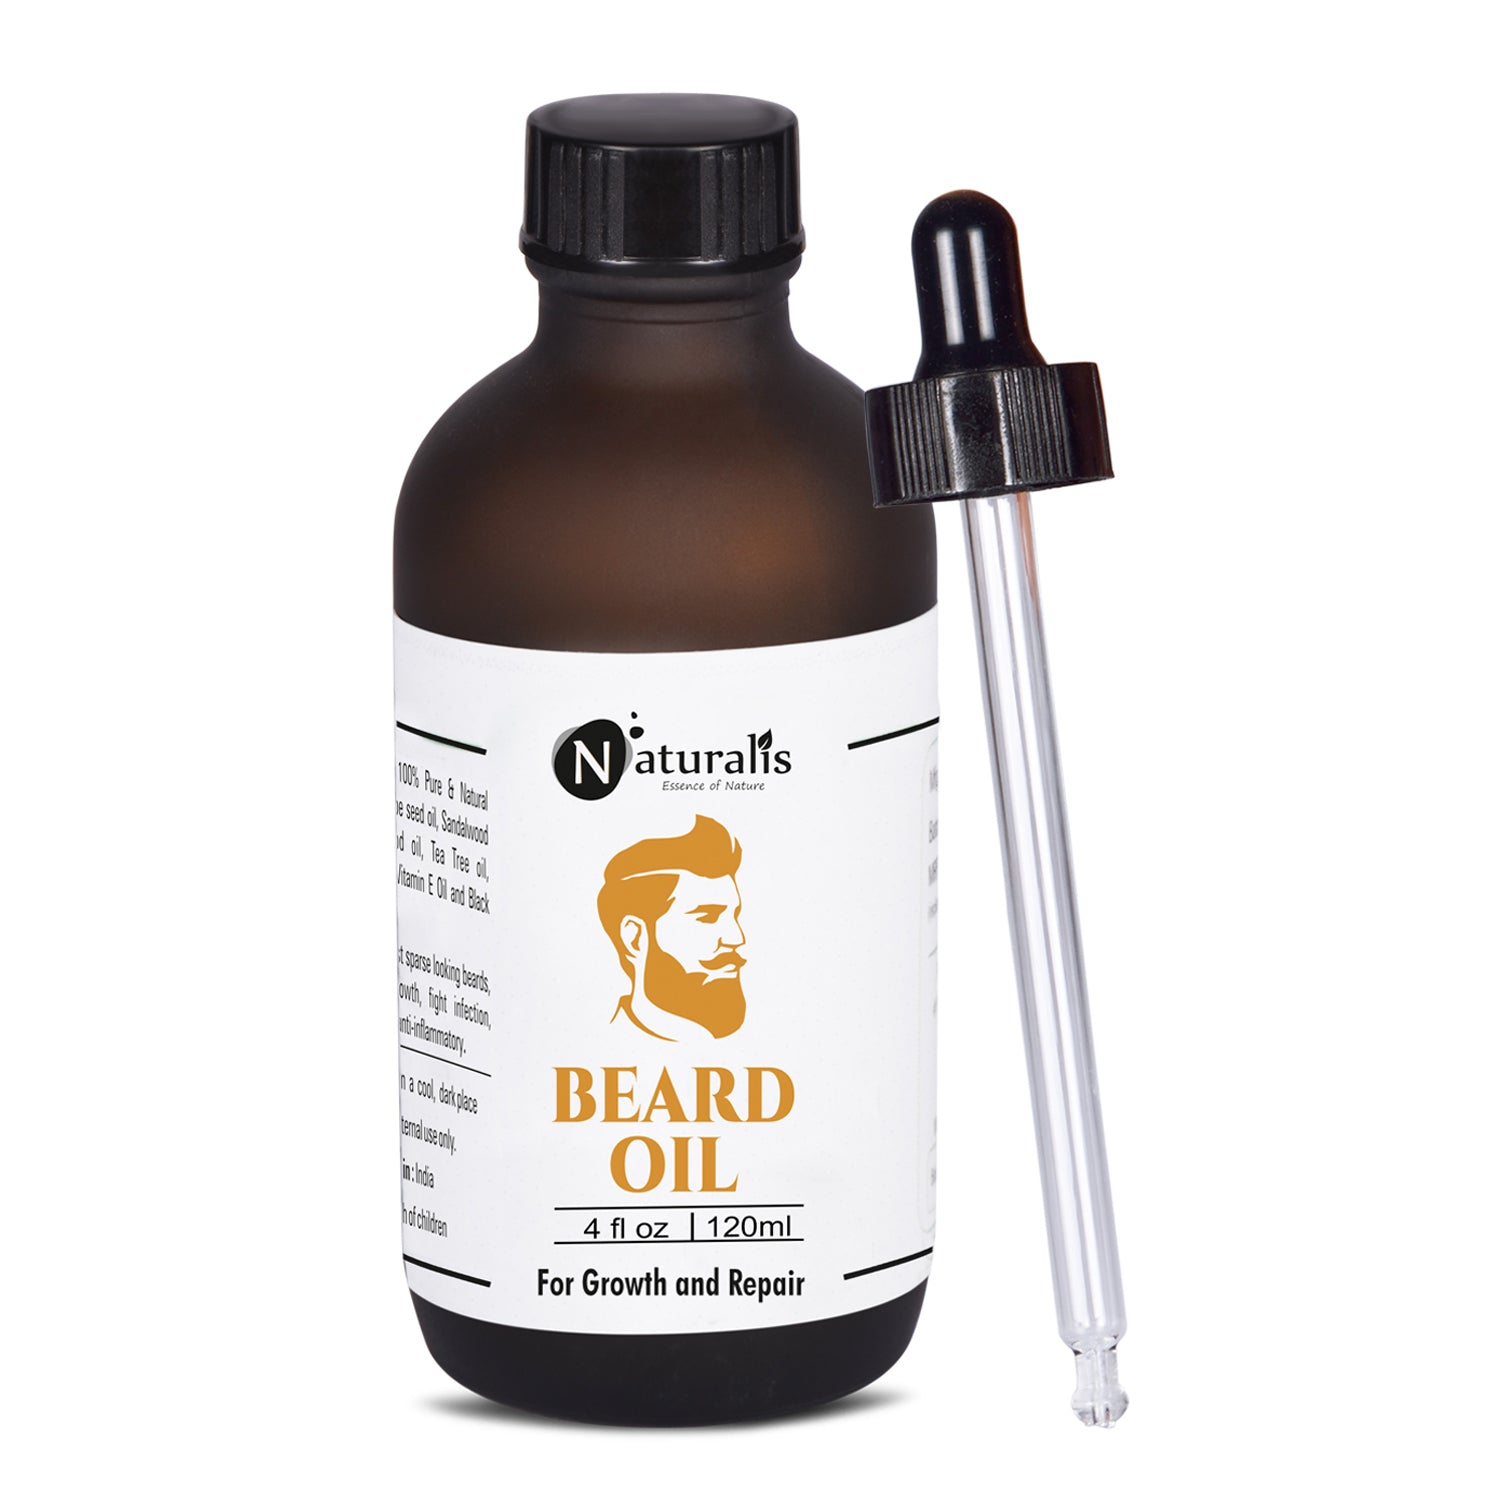 Beard Oil For Hair Growth and Repair by Naturalis - Naturalis